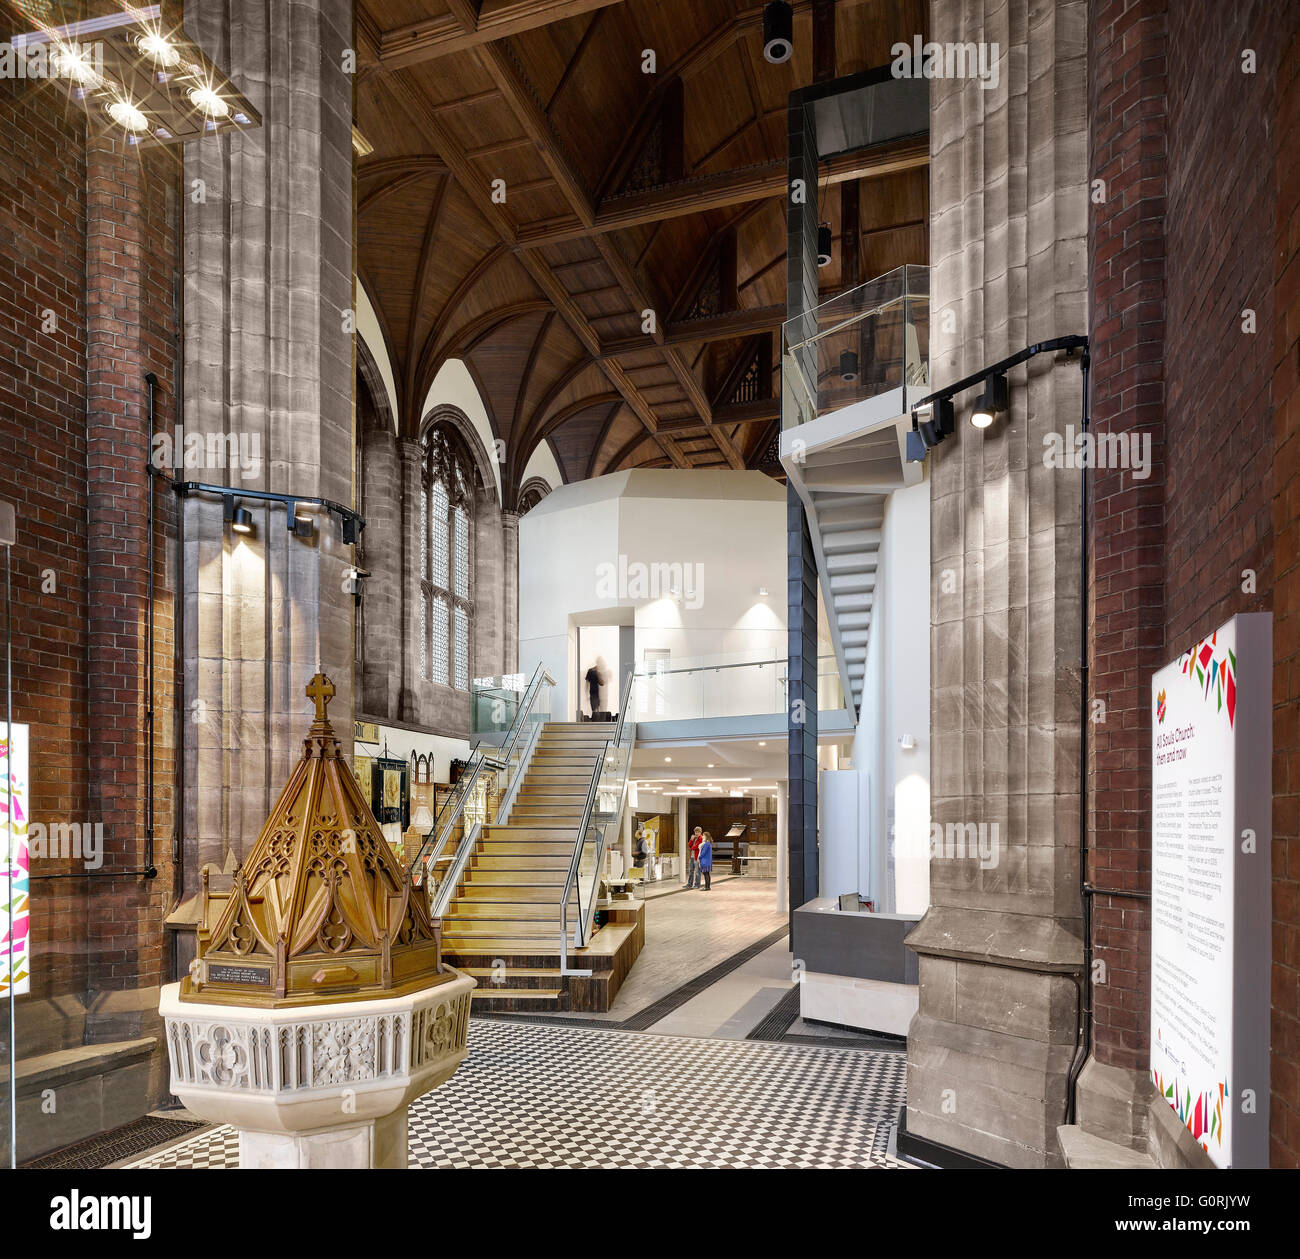 Toutes les âmes, Bolton, Angleterre. La combinaison de design contemporain et traditionnel à l'intérieur de l'église. Banque D'Images